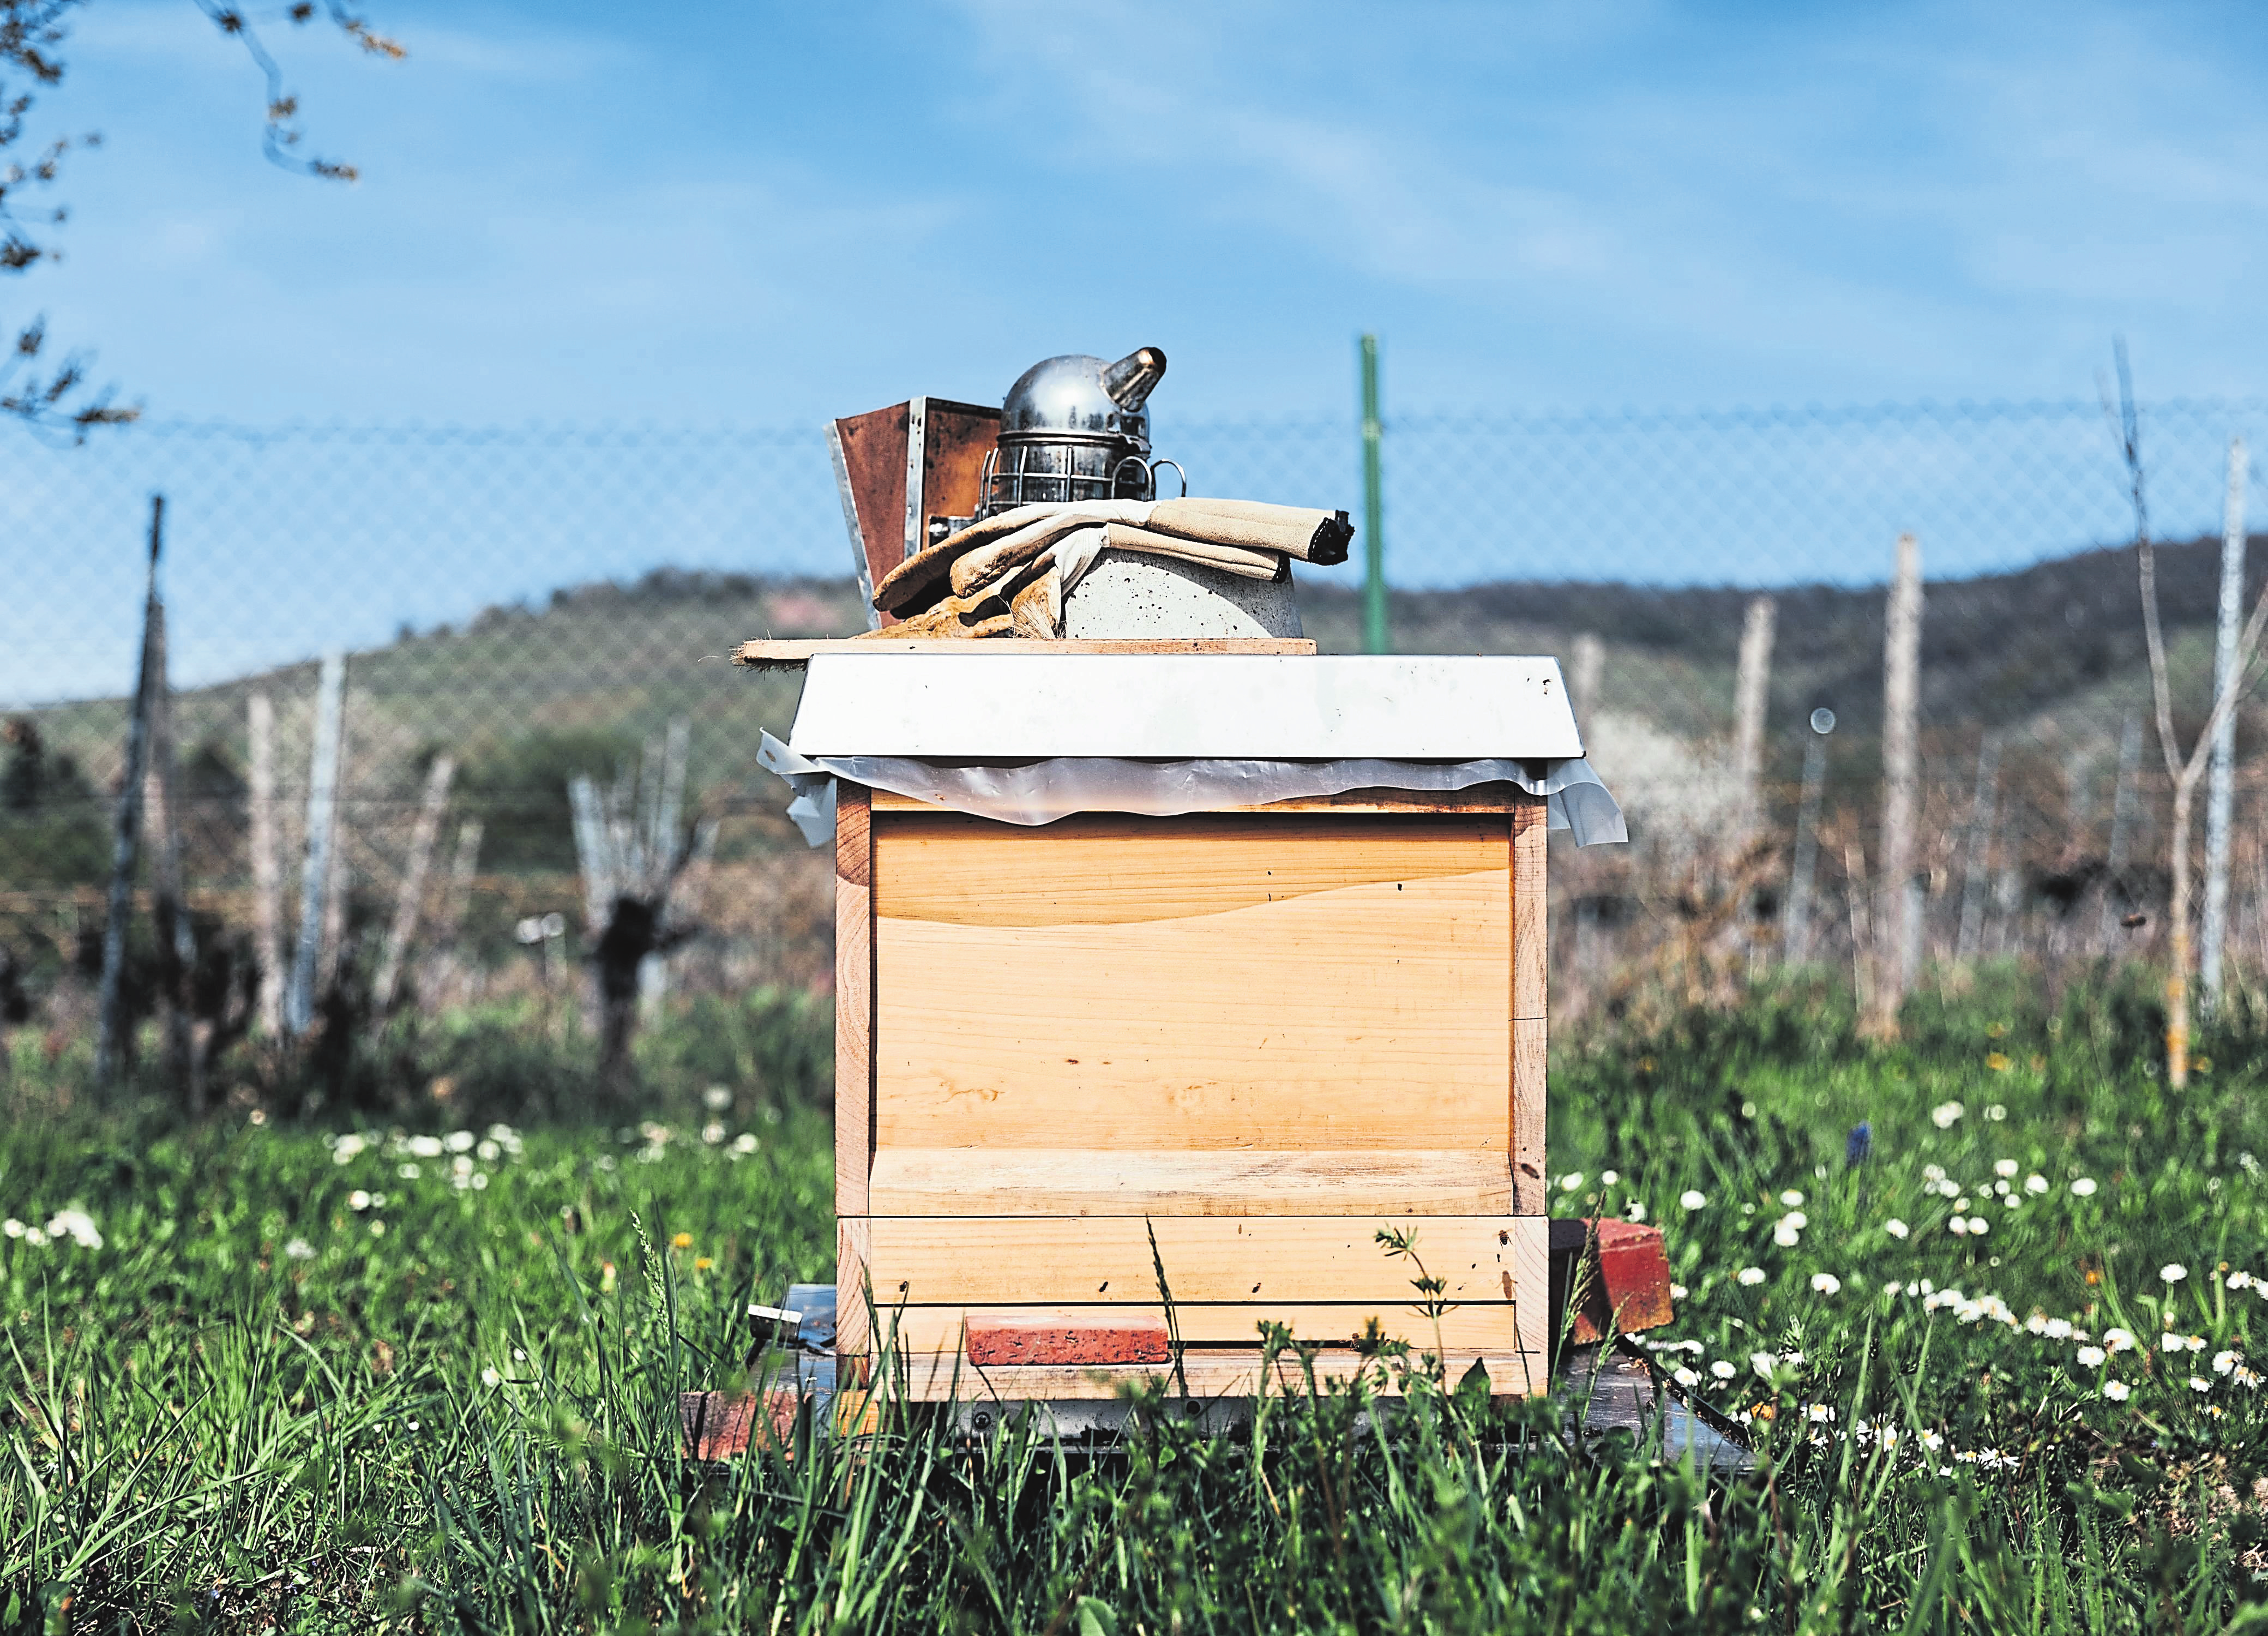 En plus de posséder le matériel de base adéquat, se lancer dans l'apiculture exige aussi de connaître la loi inhérente au domaine d'activité.